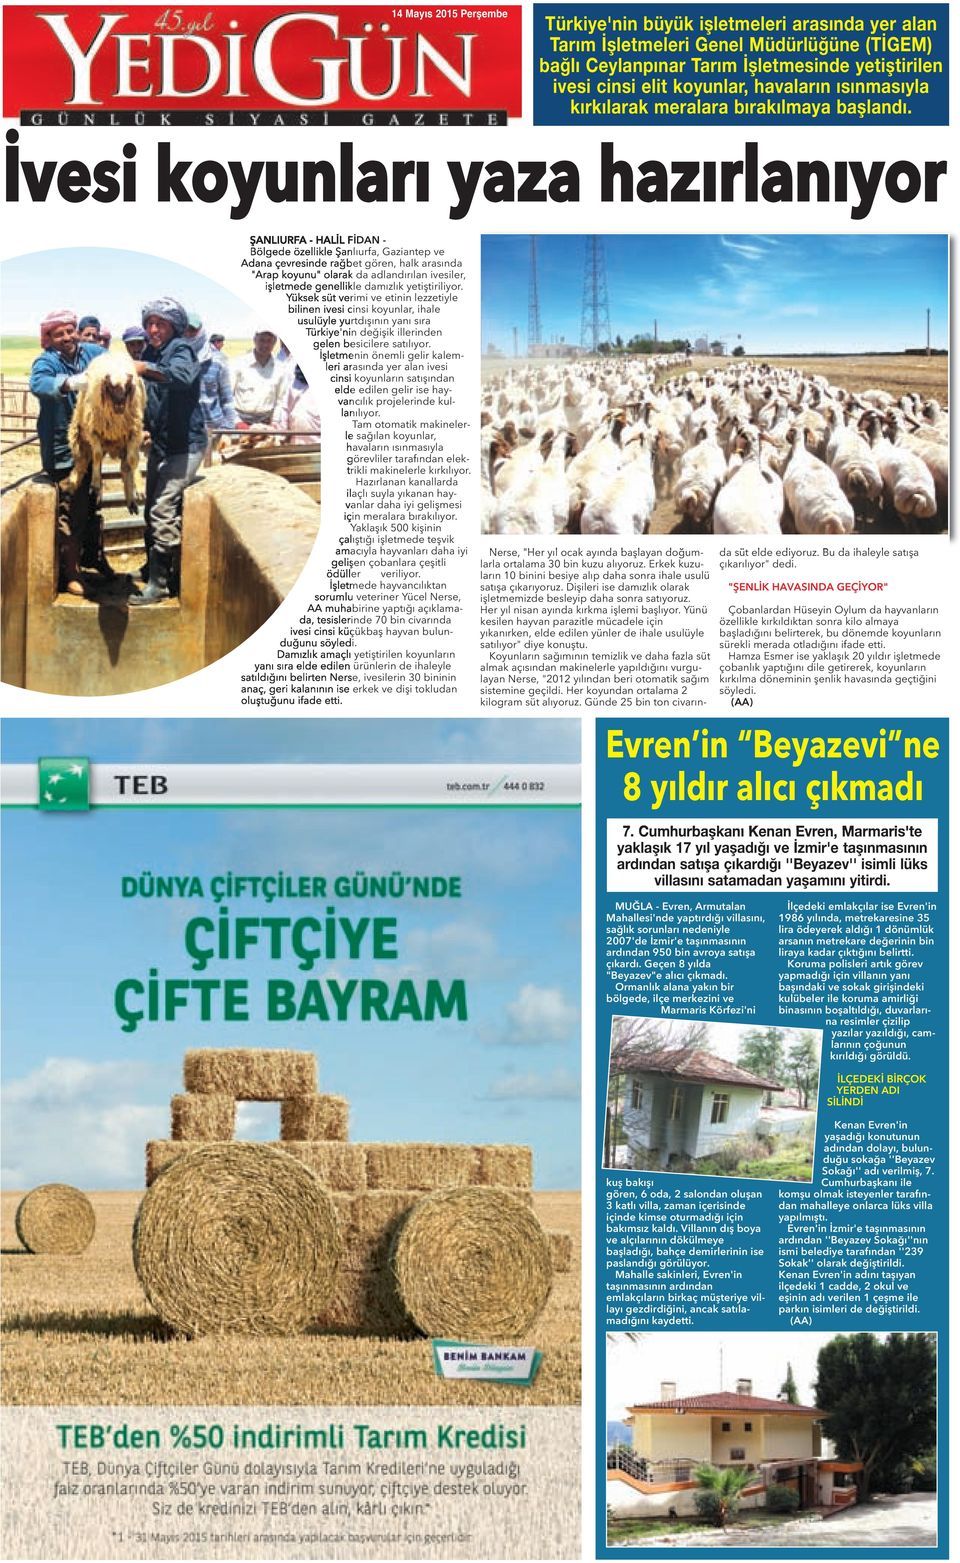 İvesi koyunları yaza hazırlanıyor ŞAnLıUrFA - HALİL FİdAn - Bölgede özellikle Şanlıurfa, Gaziantep ve Adana çevresinde rağbet gören, halk arasında "Arap koyunu" olarak da adlandırılan ivesiler,